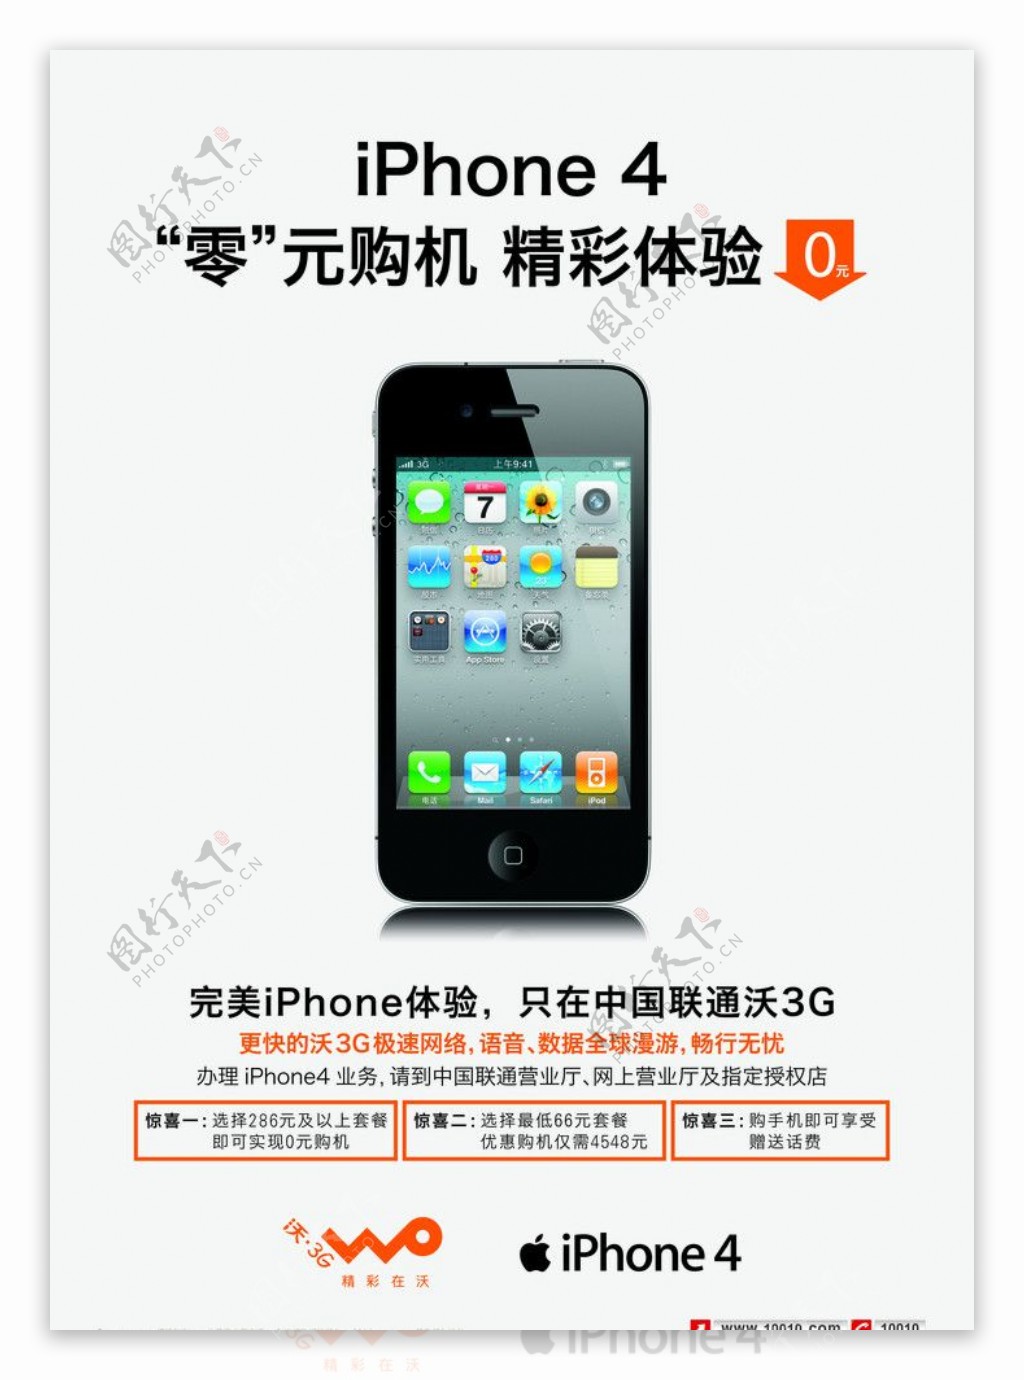 iphone4最新竖版海报图片